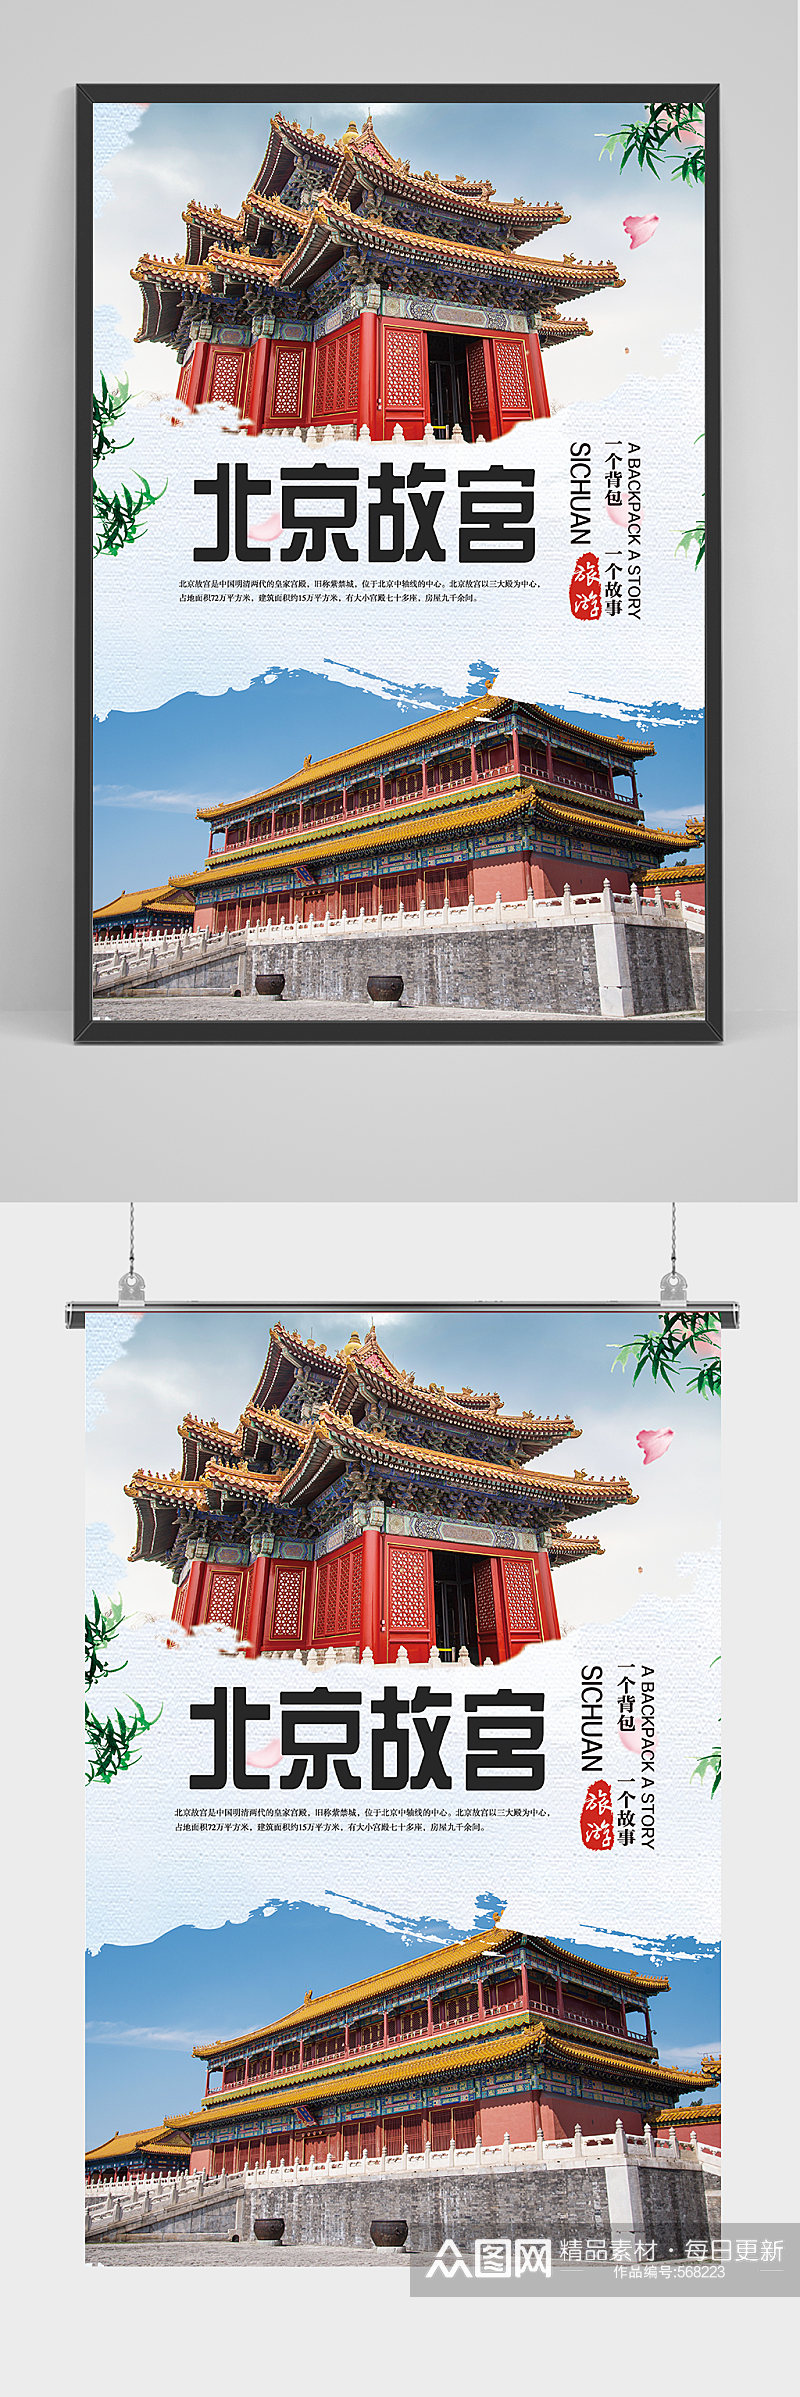 旅游北京故宫文化海报素材